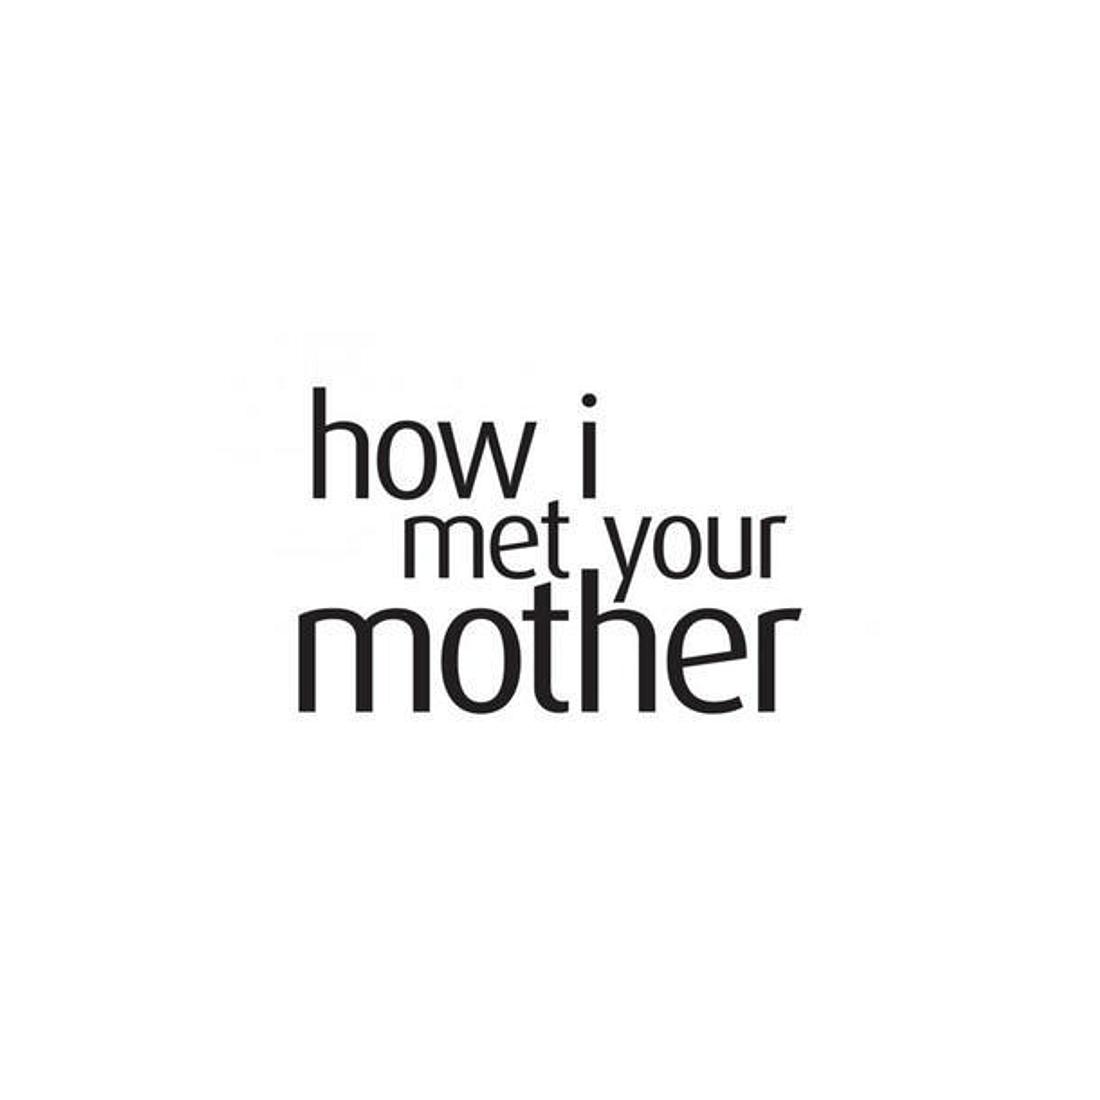 How I Met Your Mother: SIE hätte die Mutter sein sollen